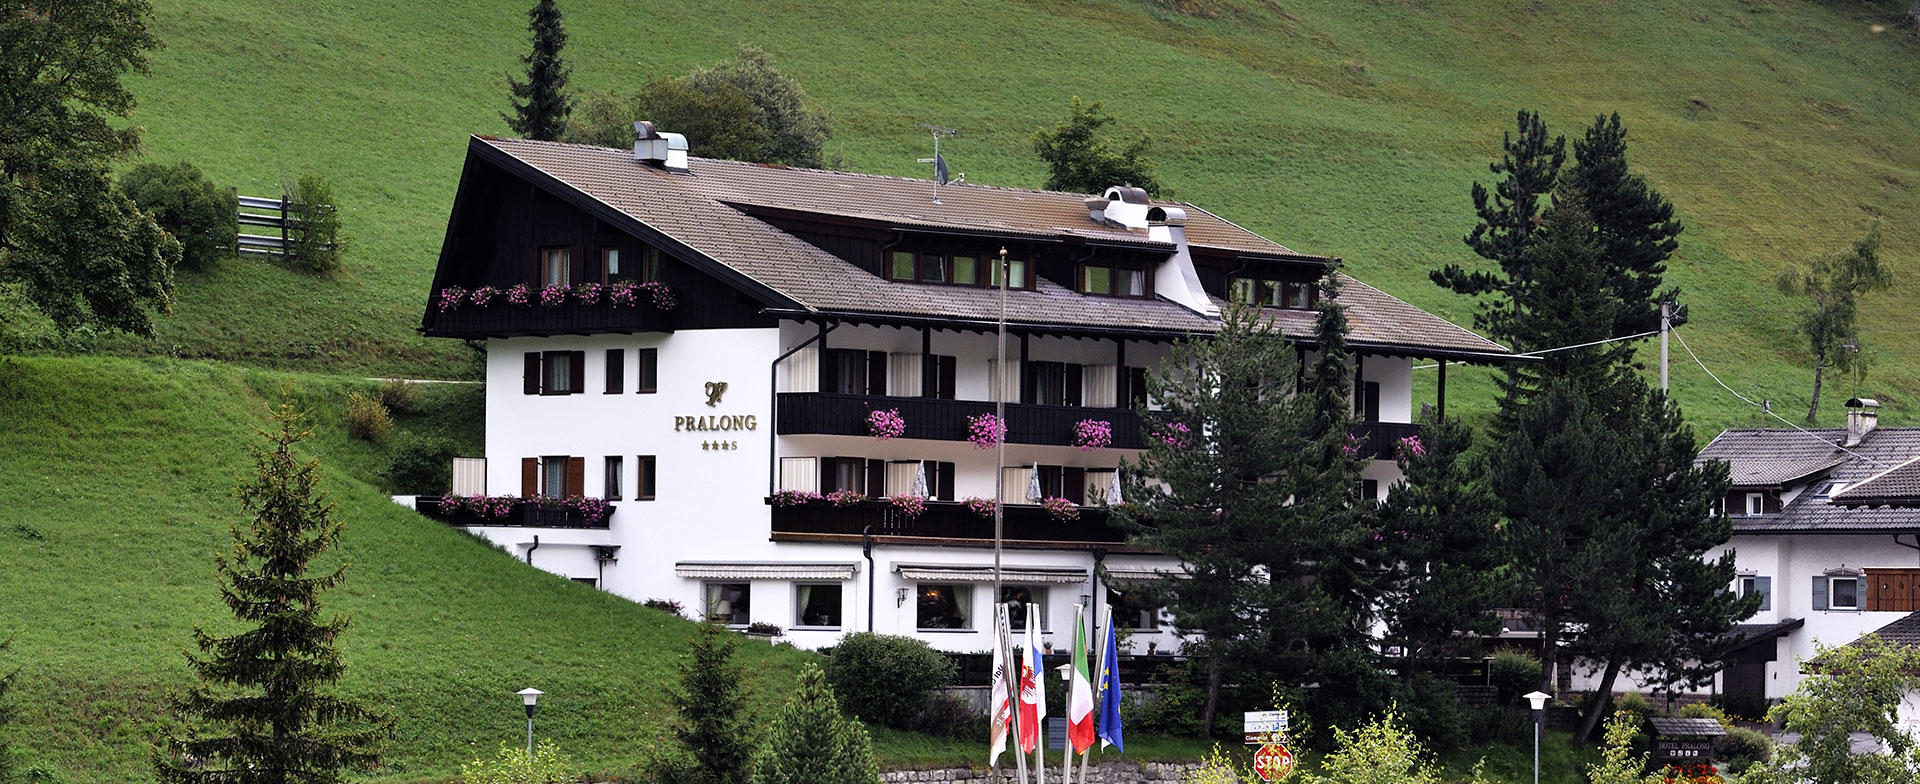 Hotel Pralong a Selva in Val Gardena nelle Dolomiti, Italia